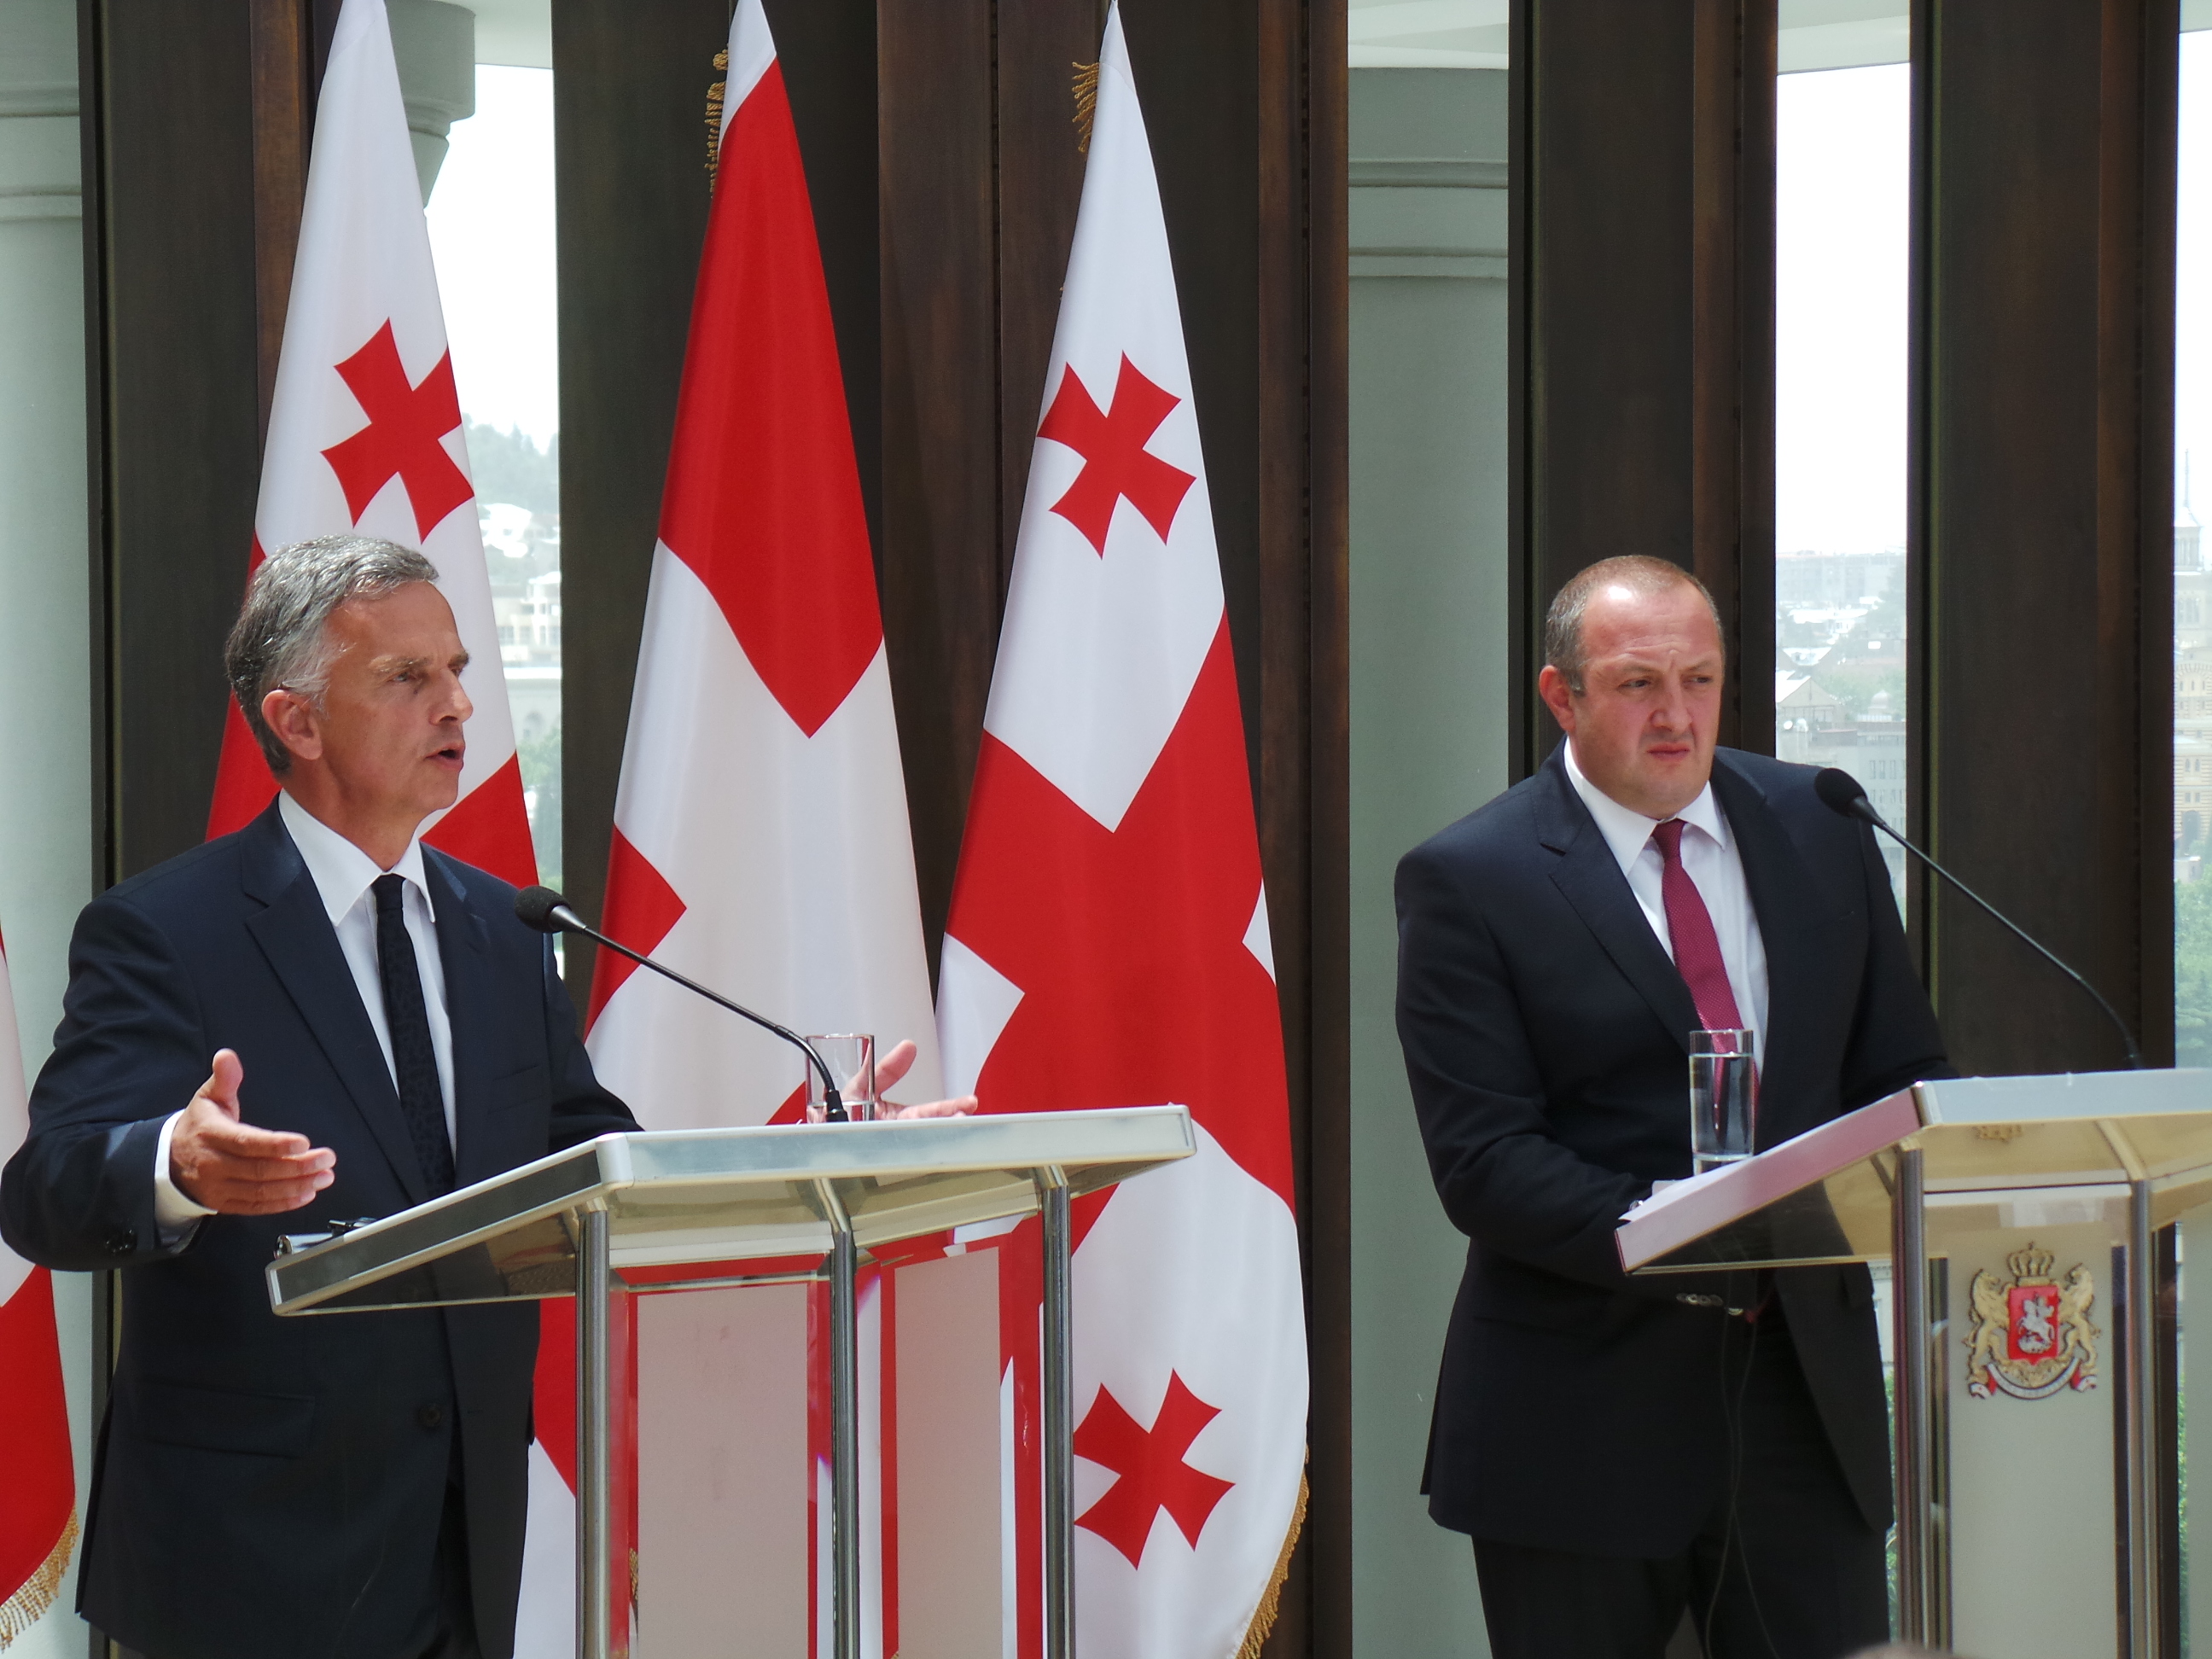 Le président de la Confédération Didier Burkhalter et le présient géorgien Giorgi Margvelashvili en conférence de presse.